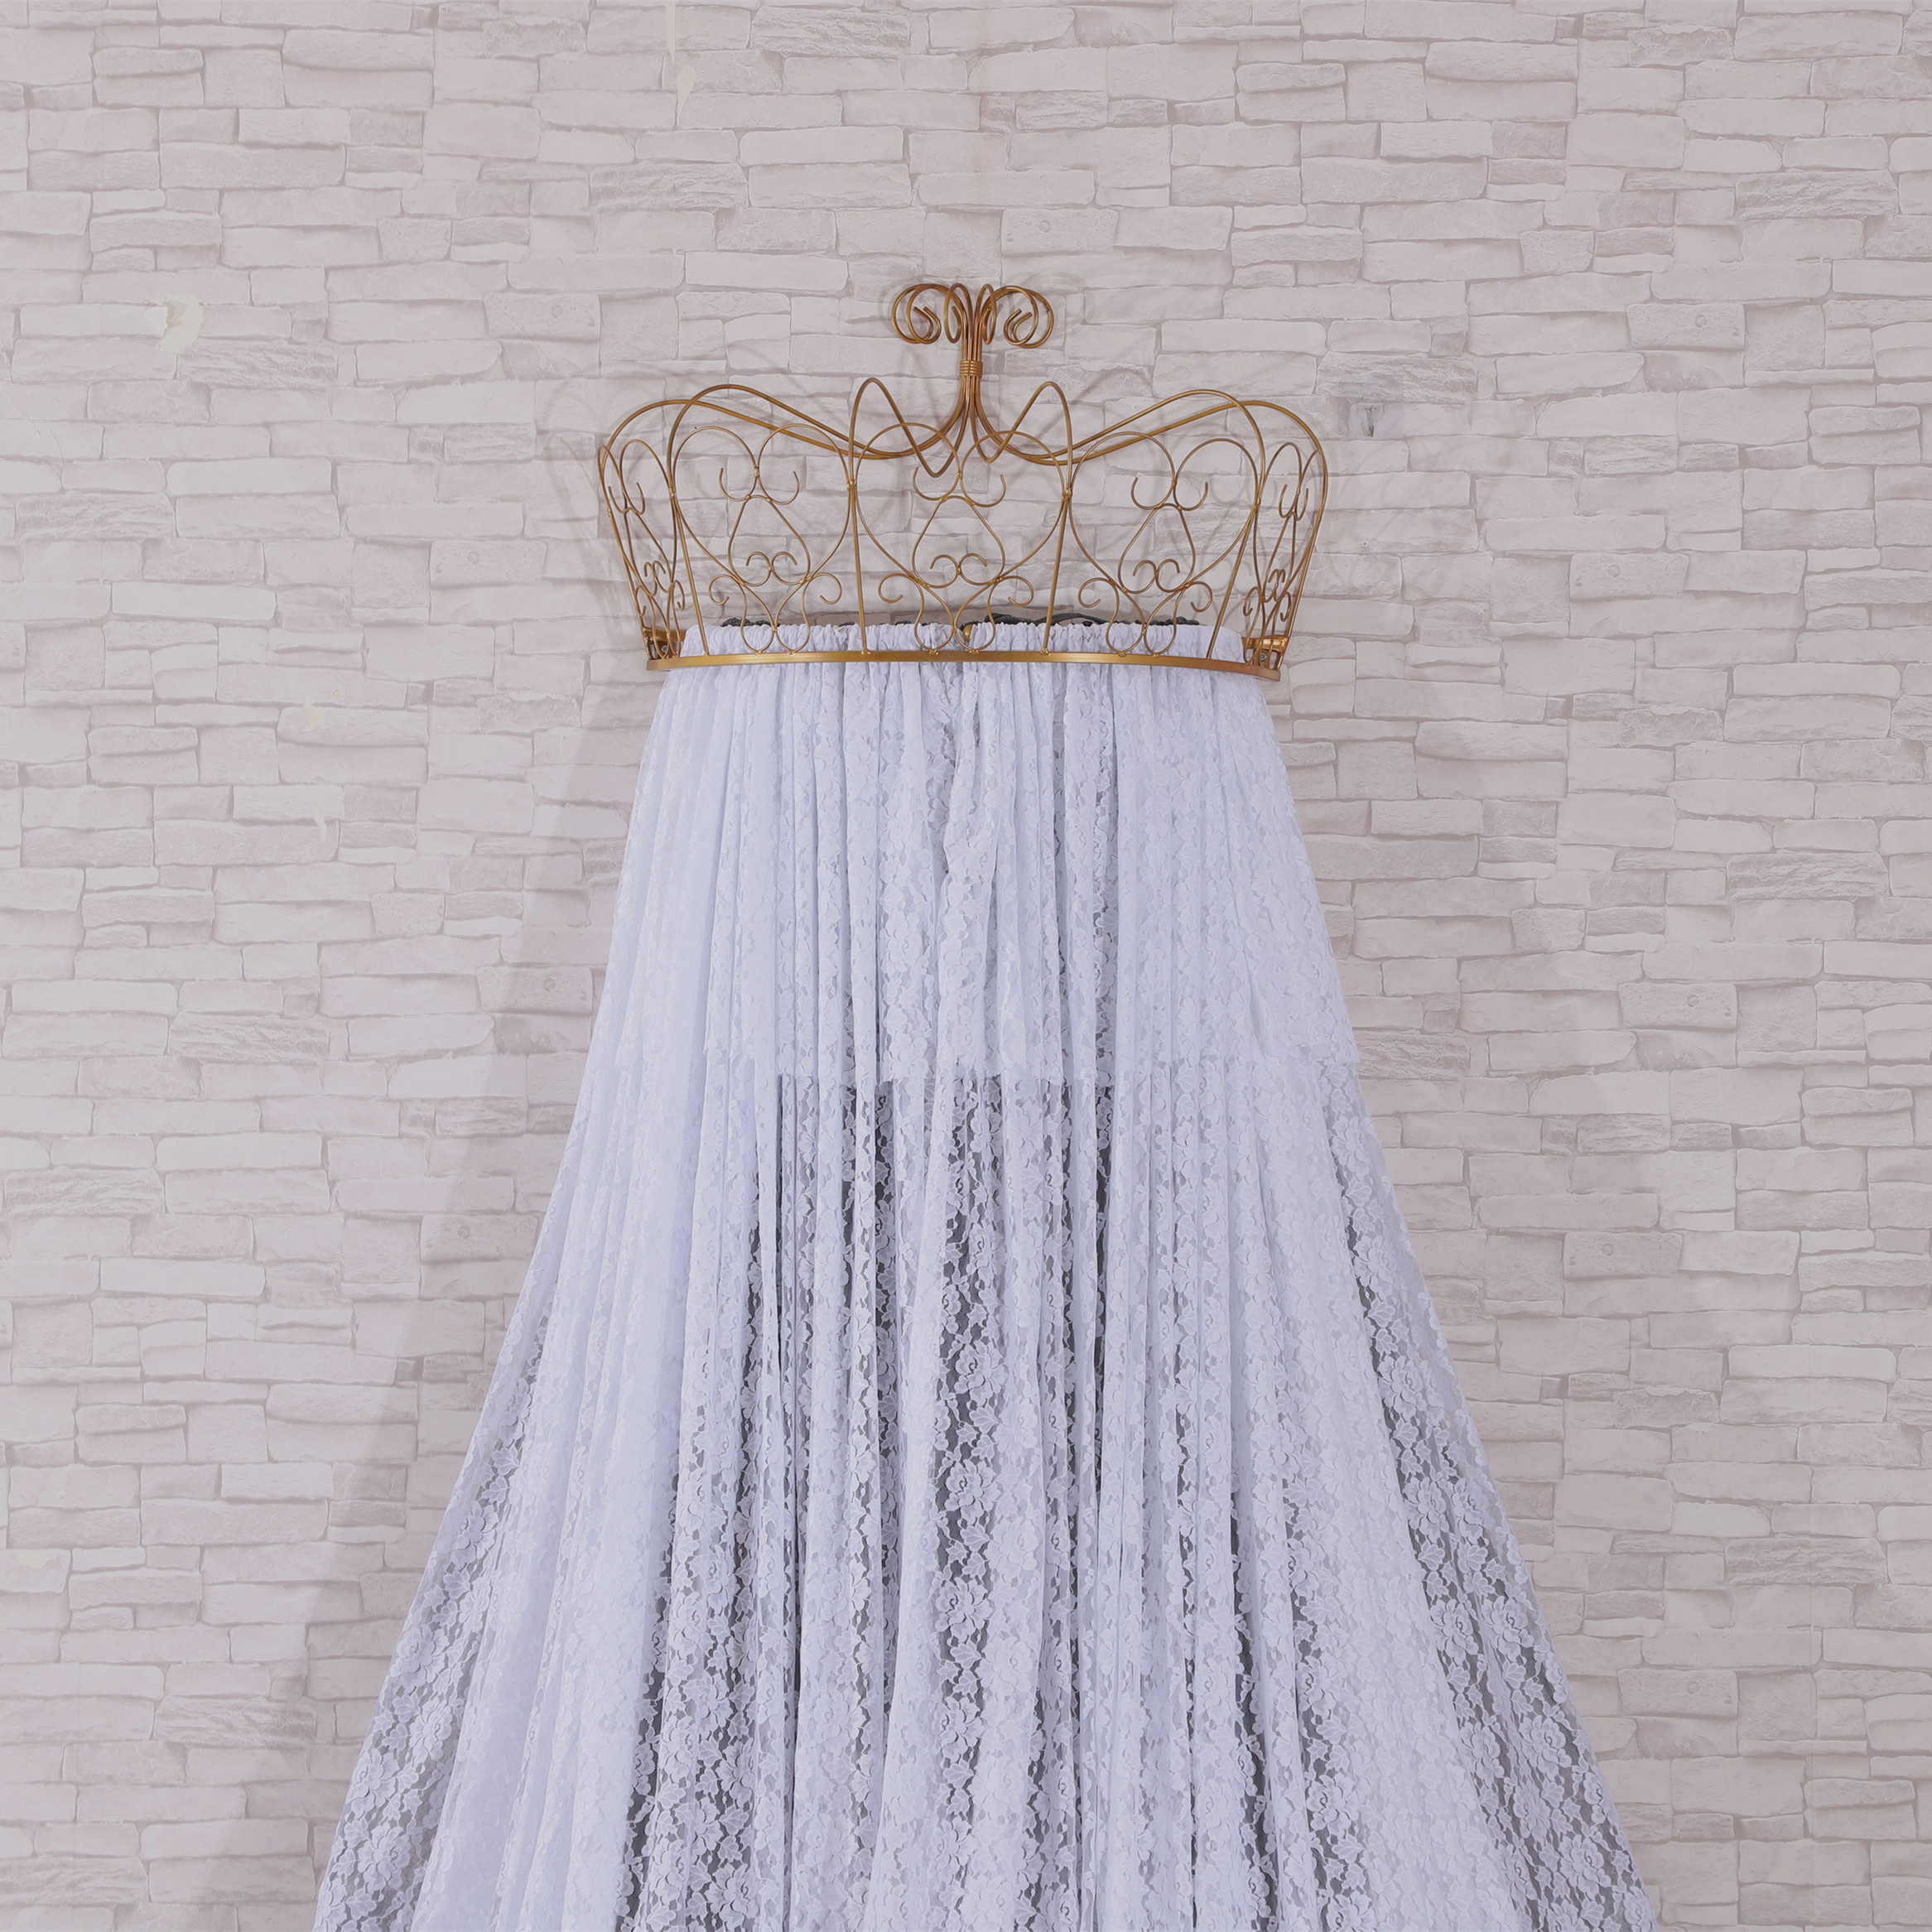 Princess Crown Lace Dekorativer Betthimmel Zweifarbiges zweilagiges Mesh-Drap-Gefühl voller eleganter Mädchen-Bettvorhang-Moskitonetze